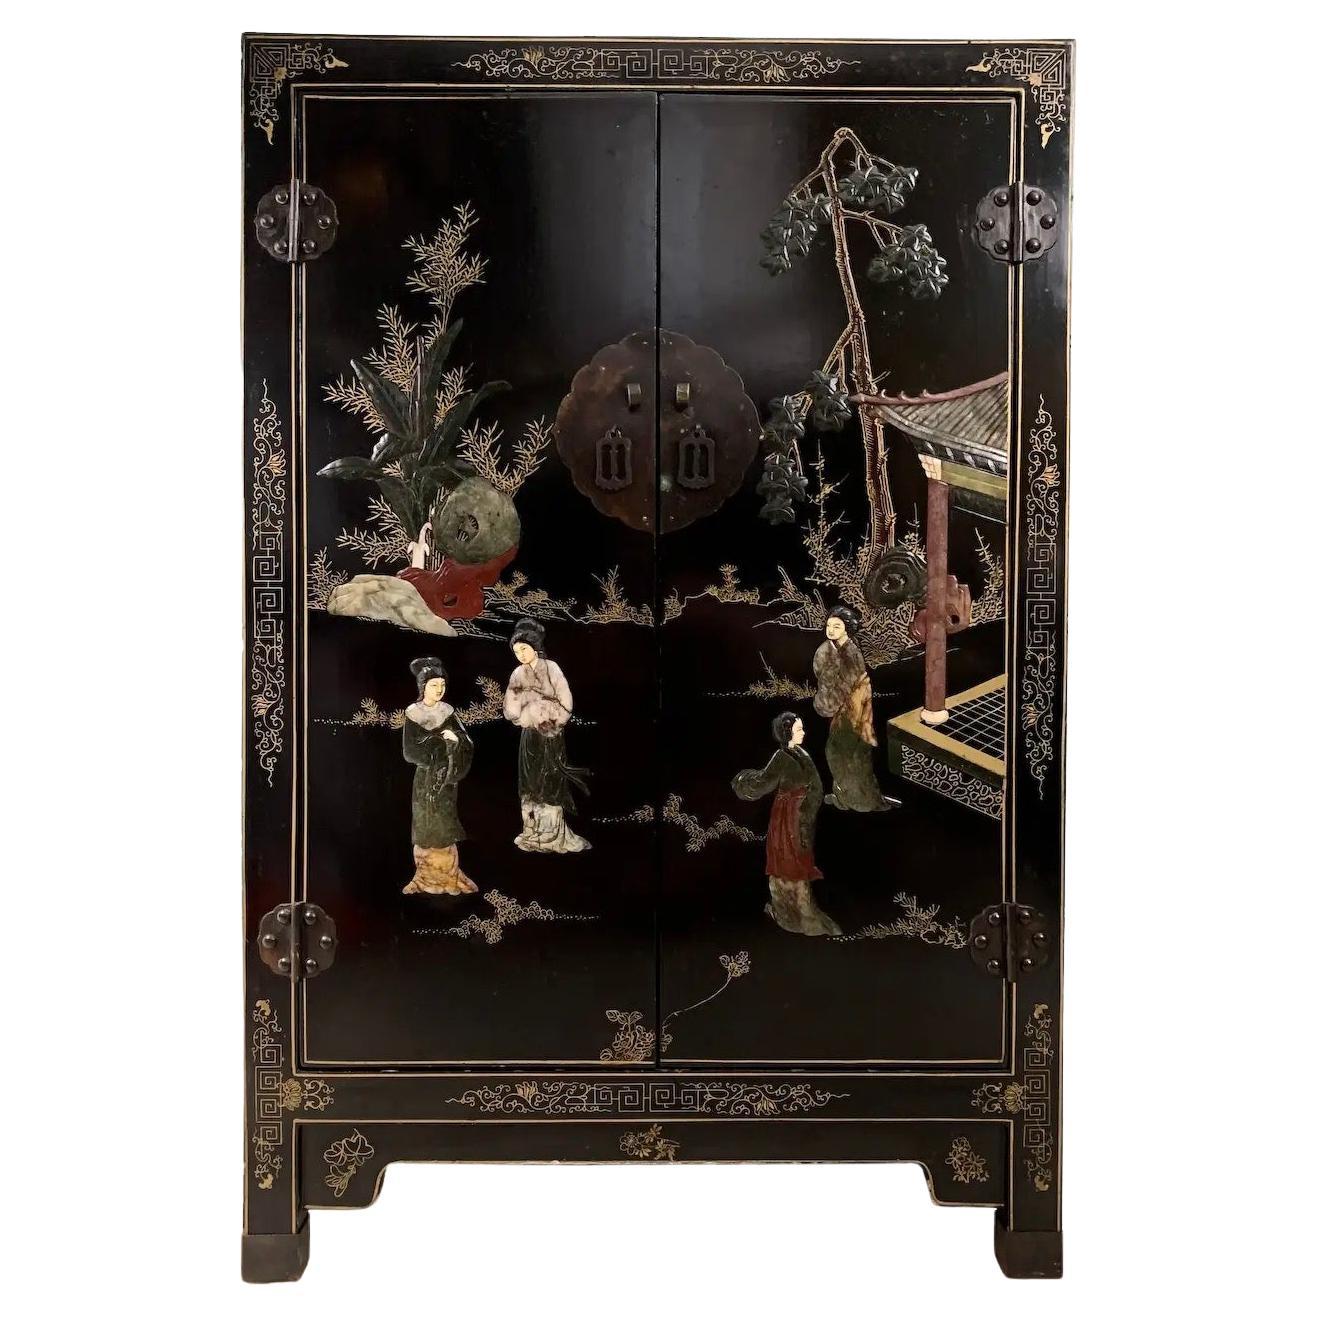 Ancien meuble de rangement asiatique de style chinoiserie avec incrustation de pierres semi-précieuses